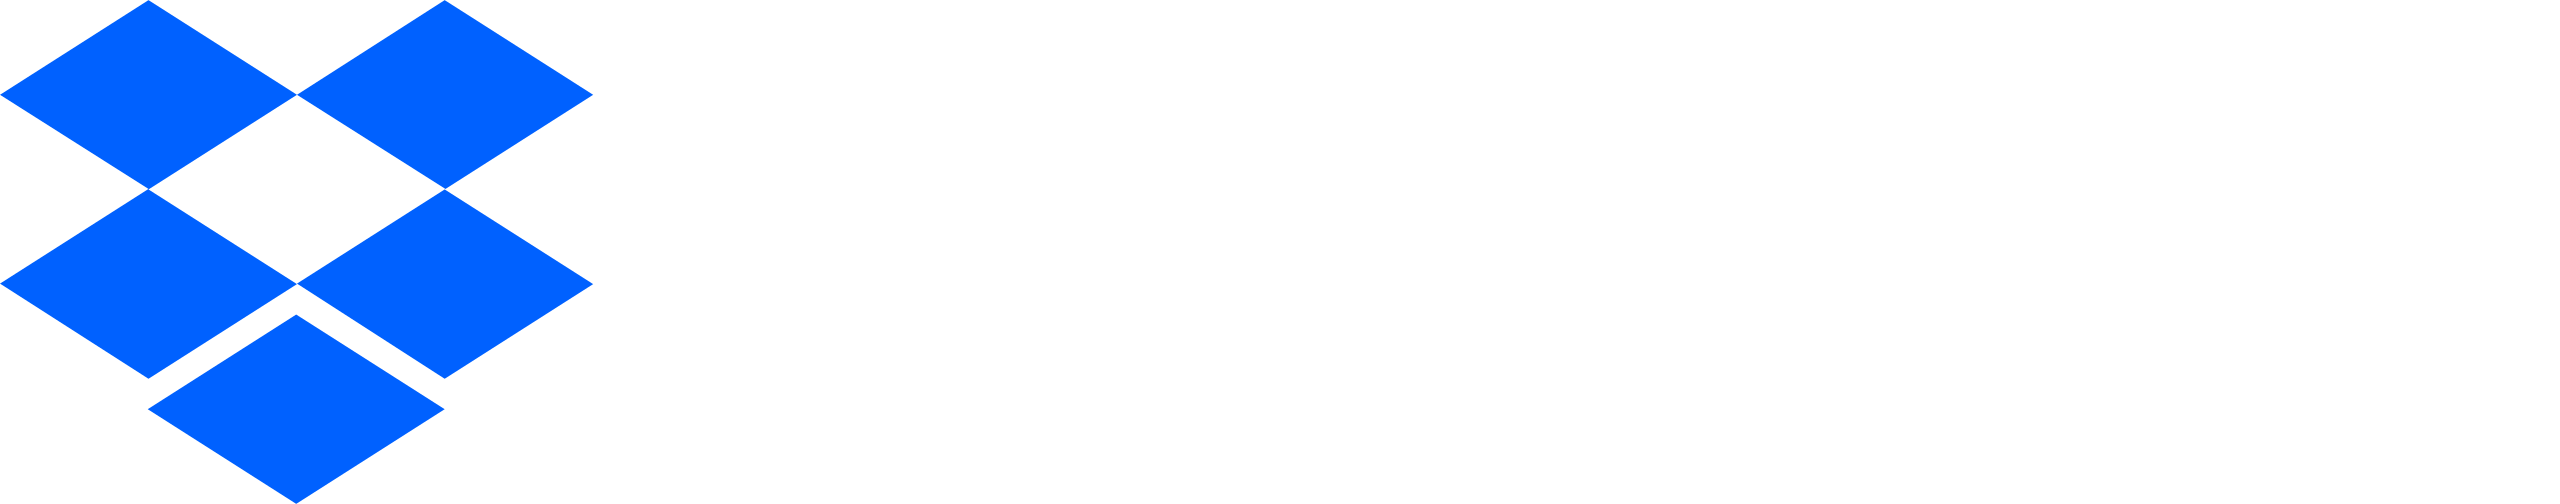 Dropbox-ロゴ